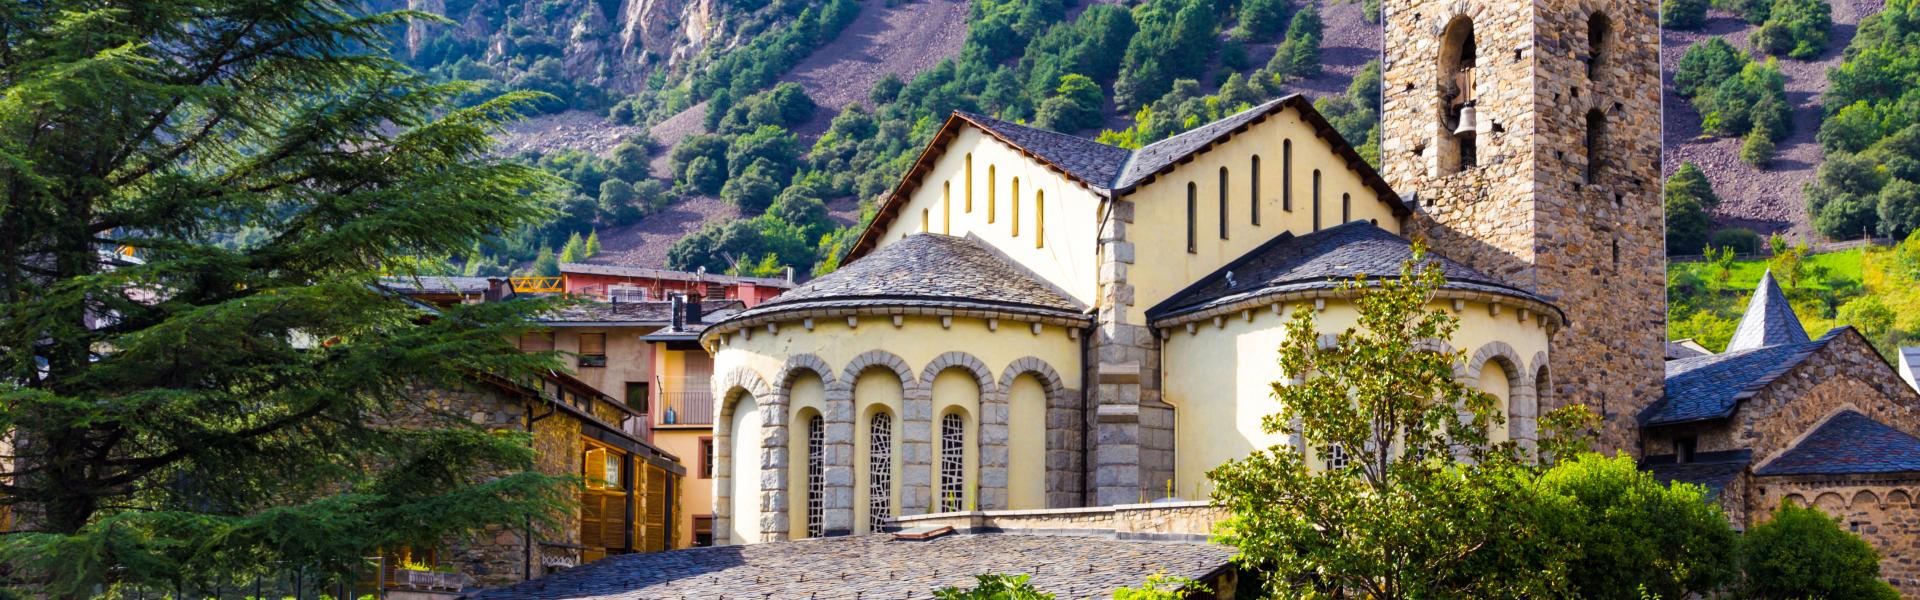 Ferienwohnungen & Ferienhäuser für Urlaub in Andorra la Vella - Casamundo